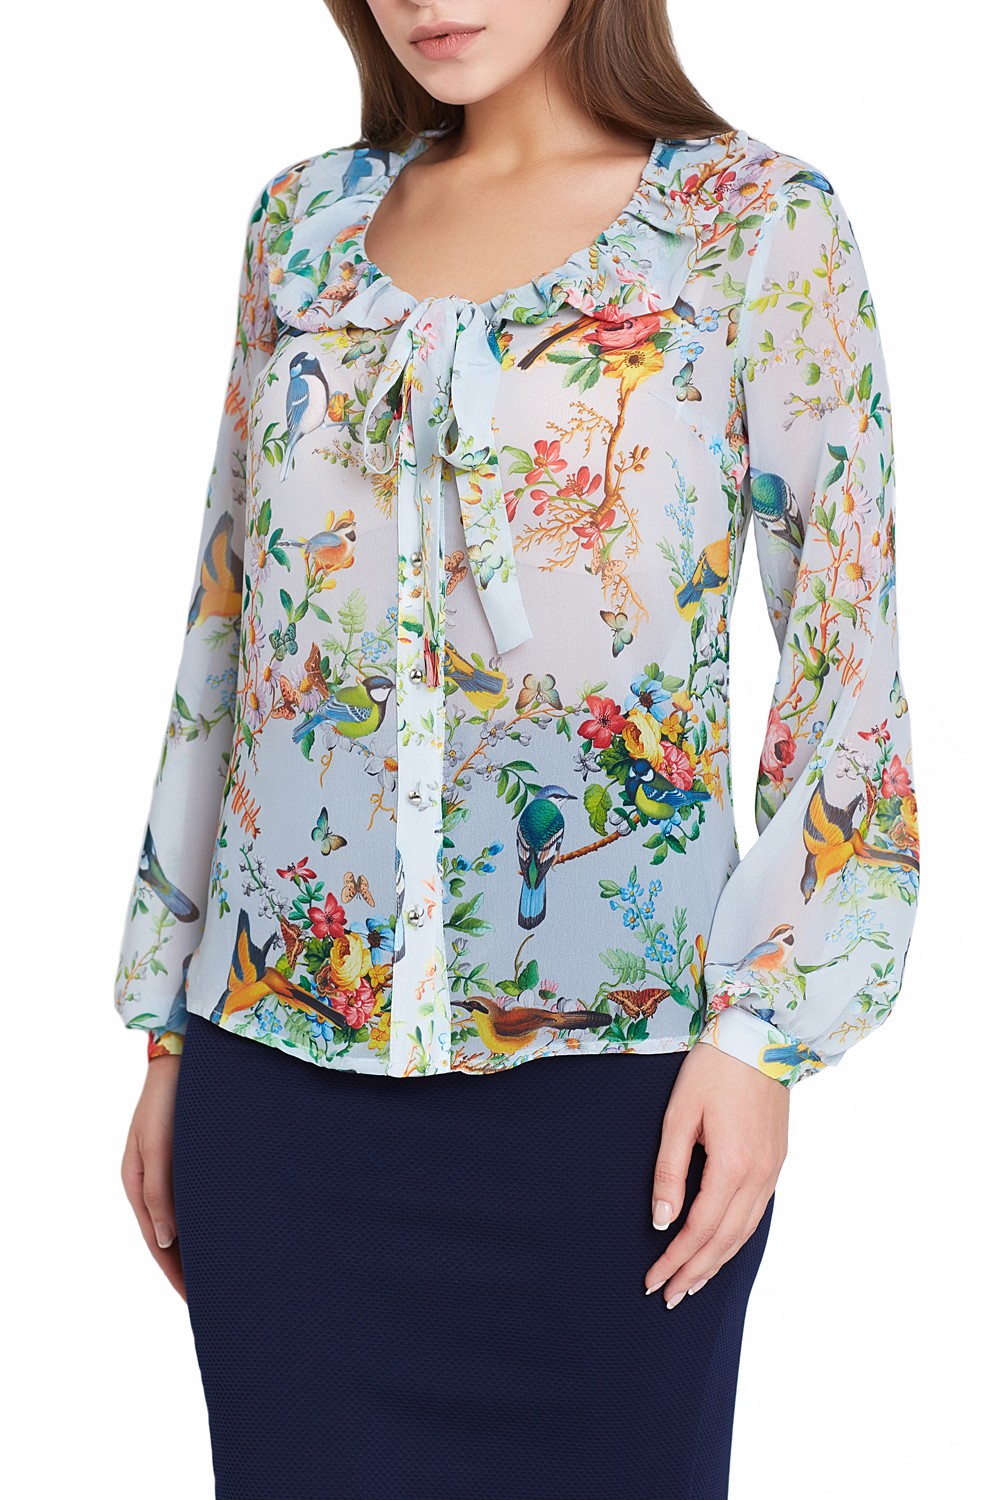 Распродажа блузок. Блузка цветная женская. Блузки женские цветастые. Блузка с цветочным принтом. Шифоновая блузка с цветочным принтом.